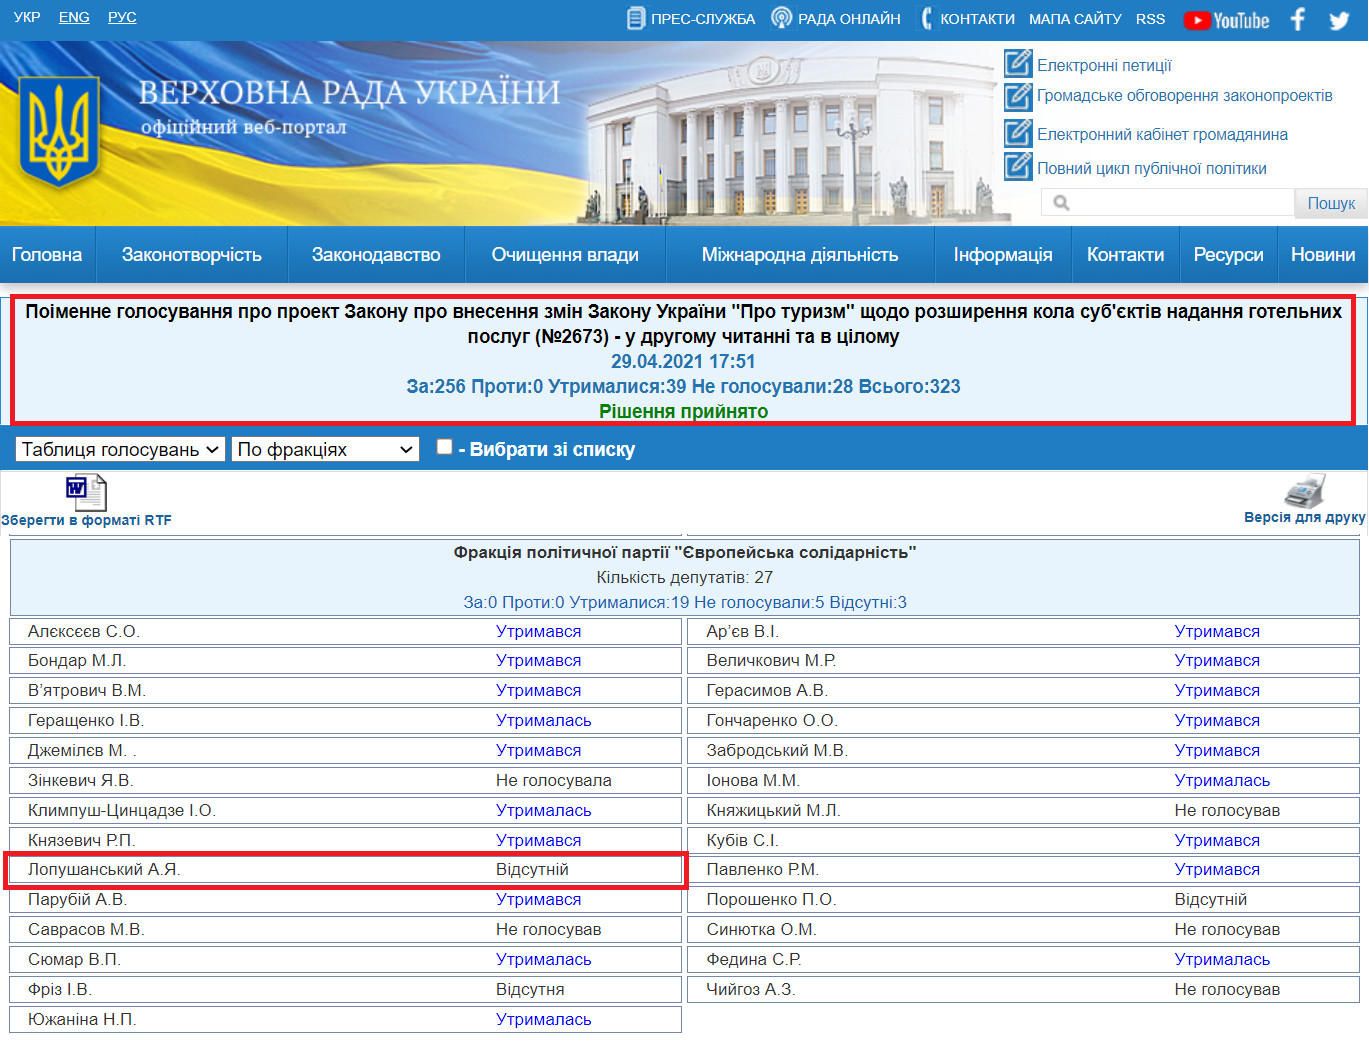 http://w1.c1.rada.gov.ua/pls/radan_gs09/ns_golos?g_id=12437